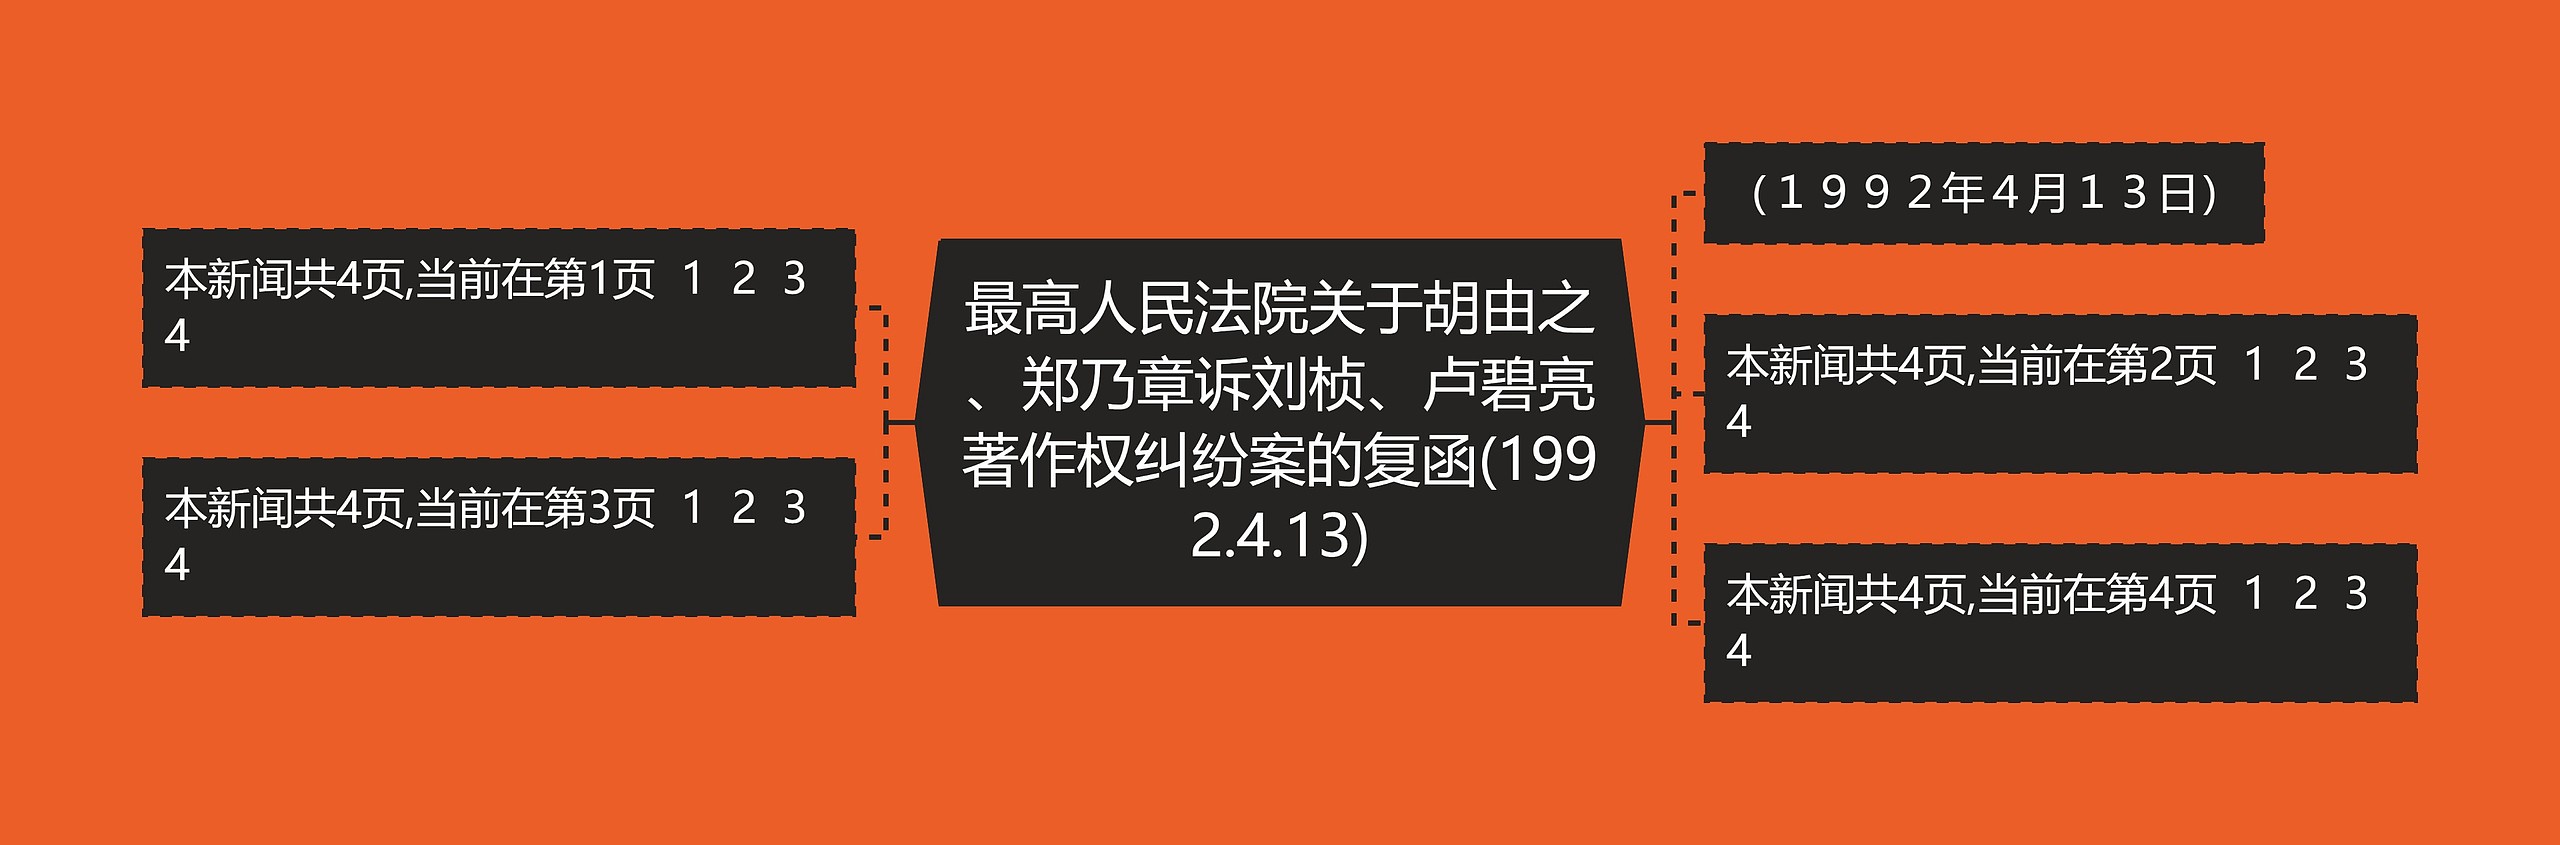 最高人民法院关于胡由之、郑乃章诉刘桢、卢碧亮著作权纠纷案的复函(1992.4.13)